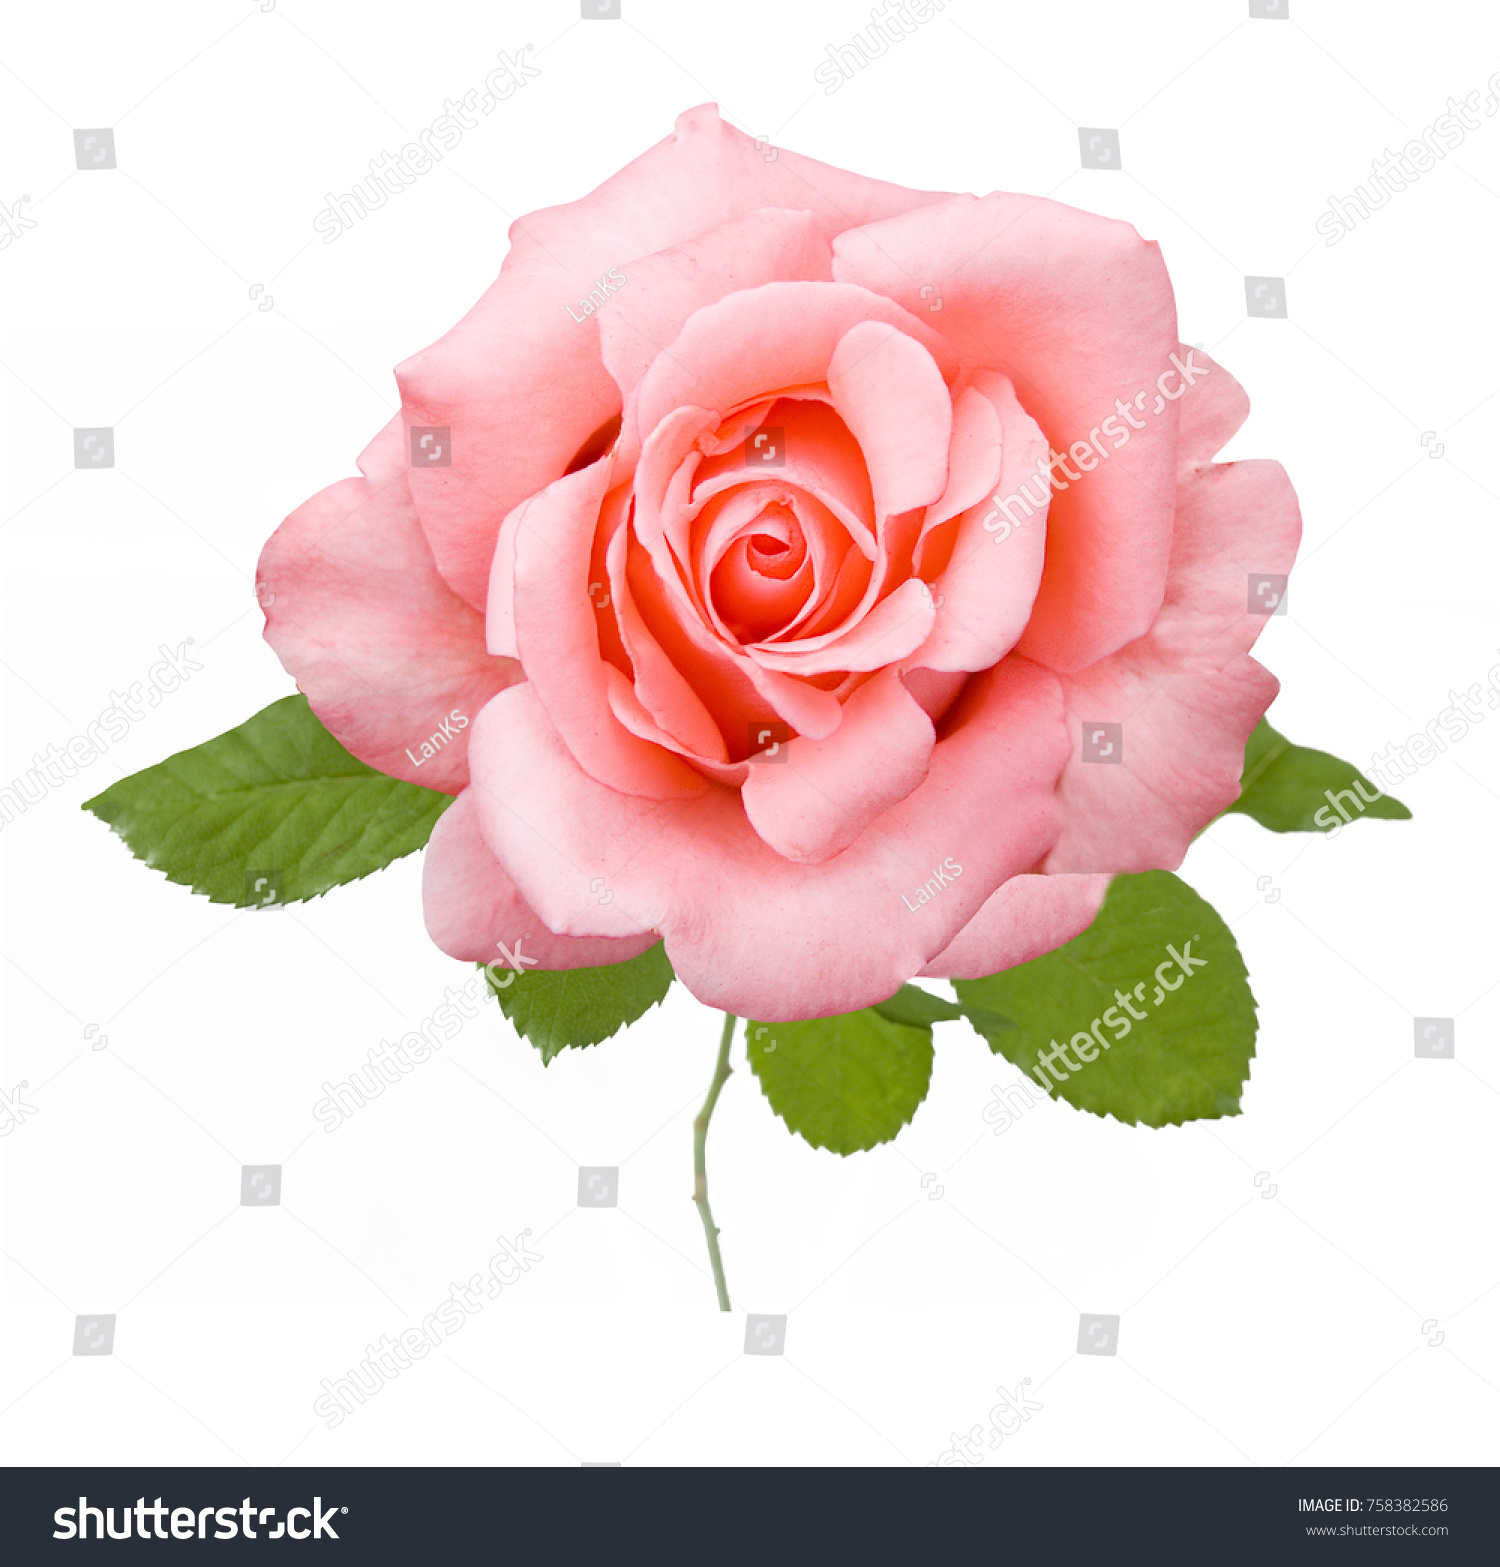 Beautiful rose isolated on white background #758382586